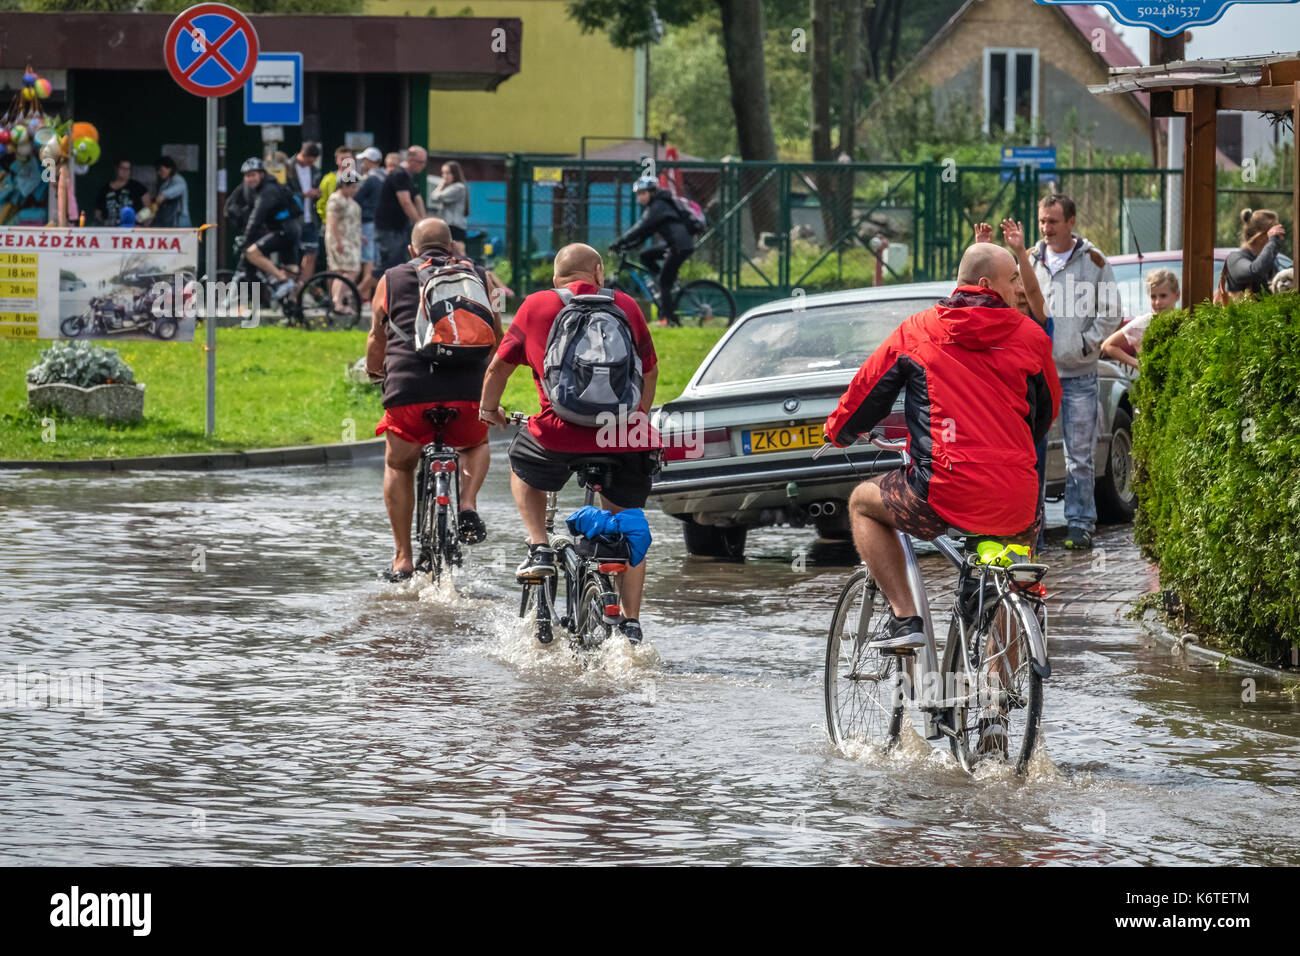 Sarbinowo, Pologne - août 2017 : trois hommes à vélo dans une eau profonde sur une route inondée après une pluie torrentielle Banque D'Images